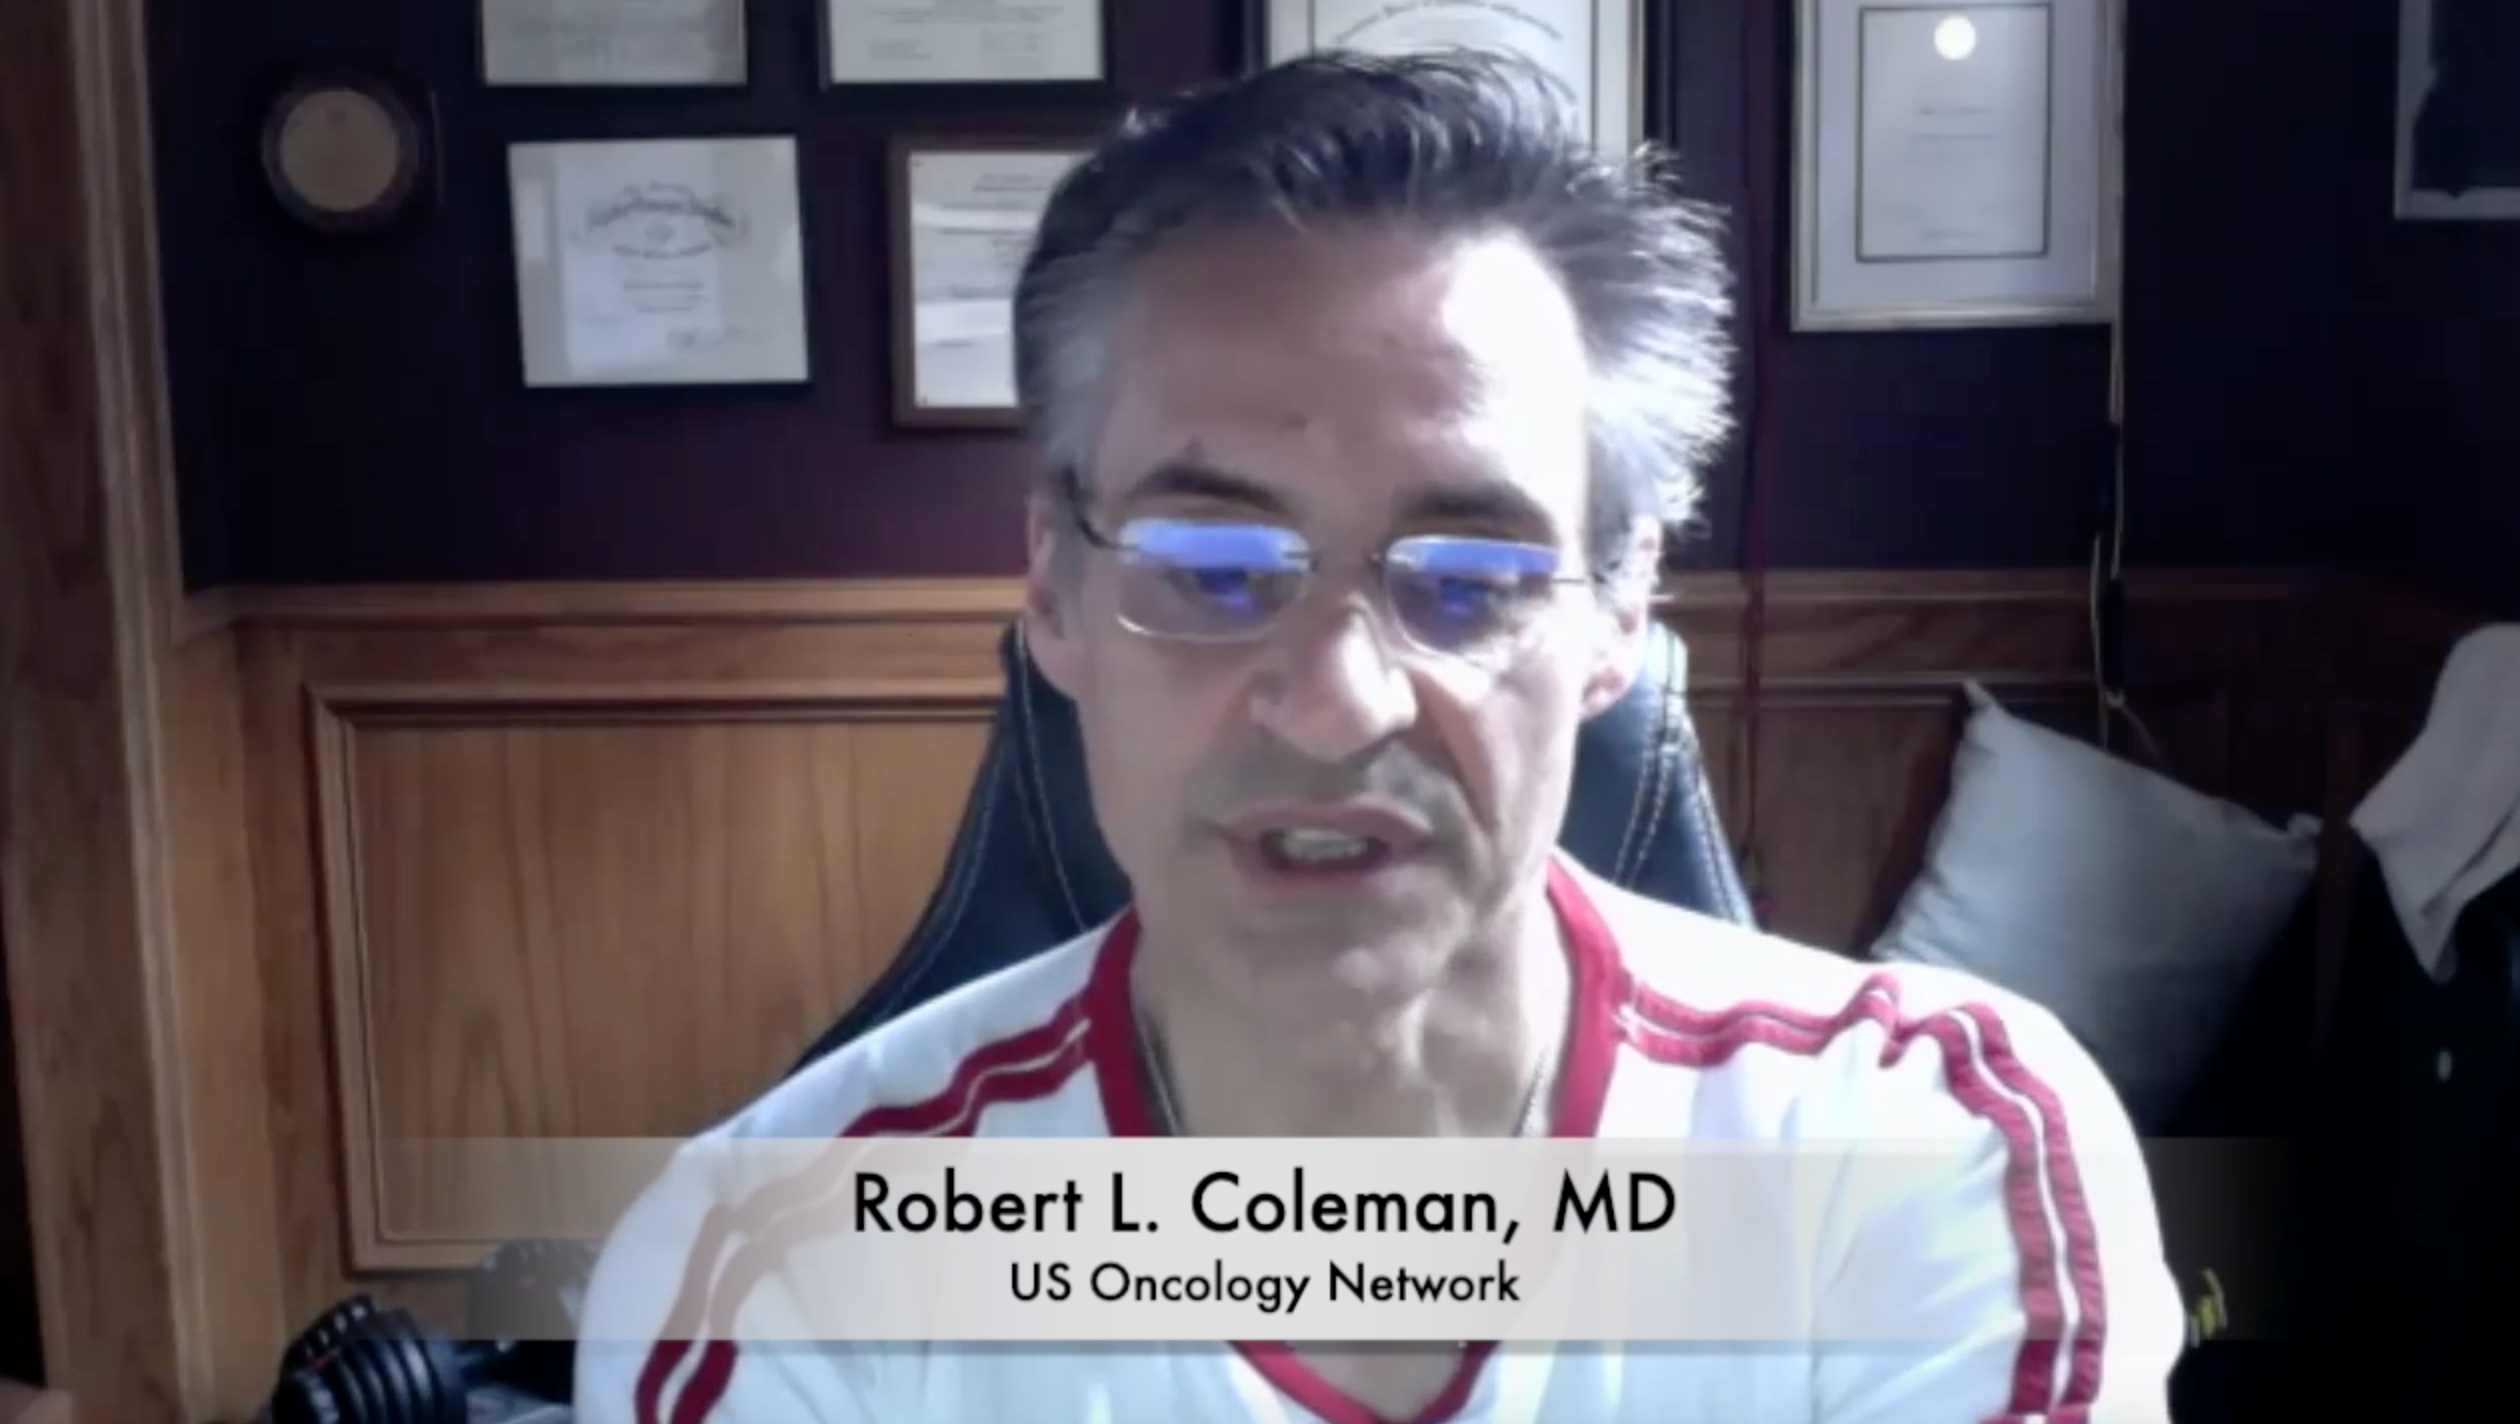 Robert L. Coleman, MD